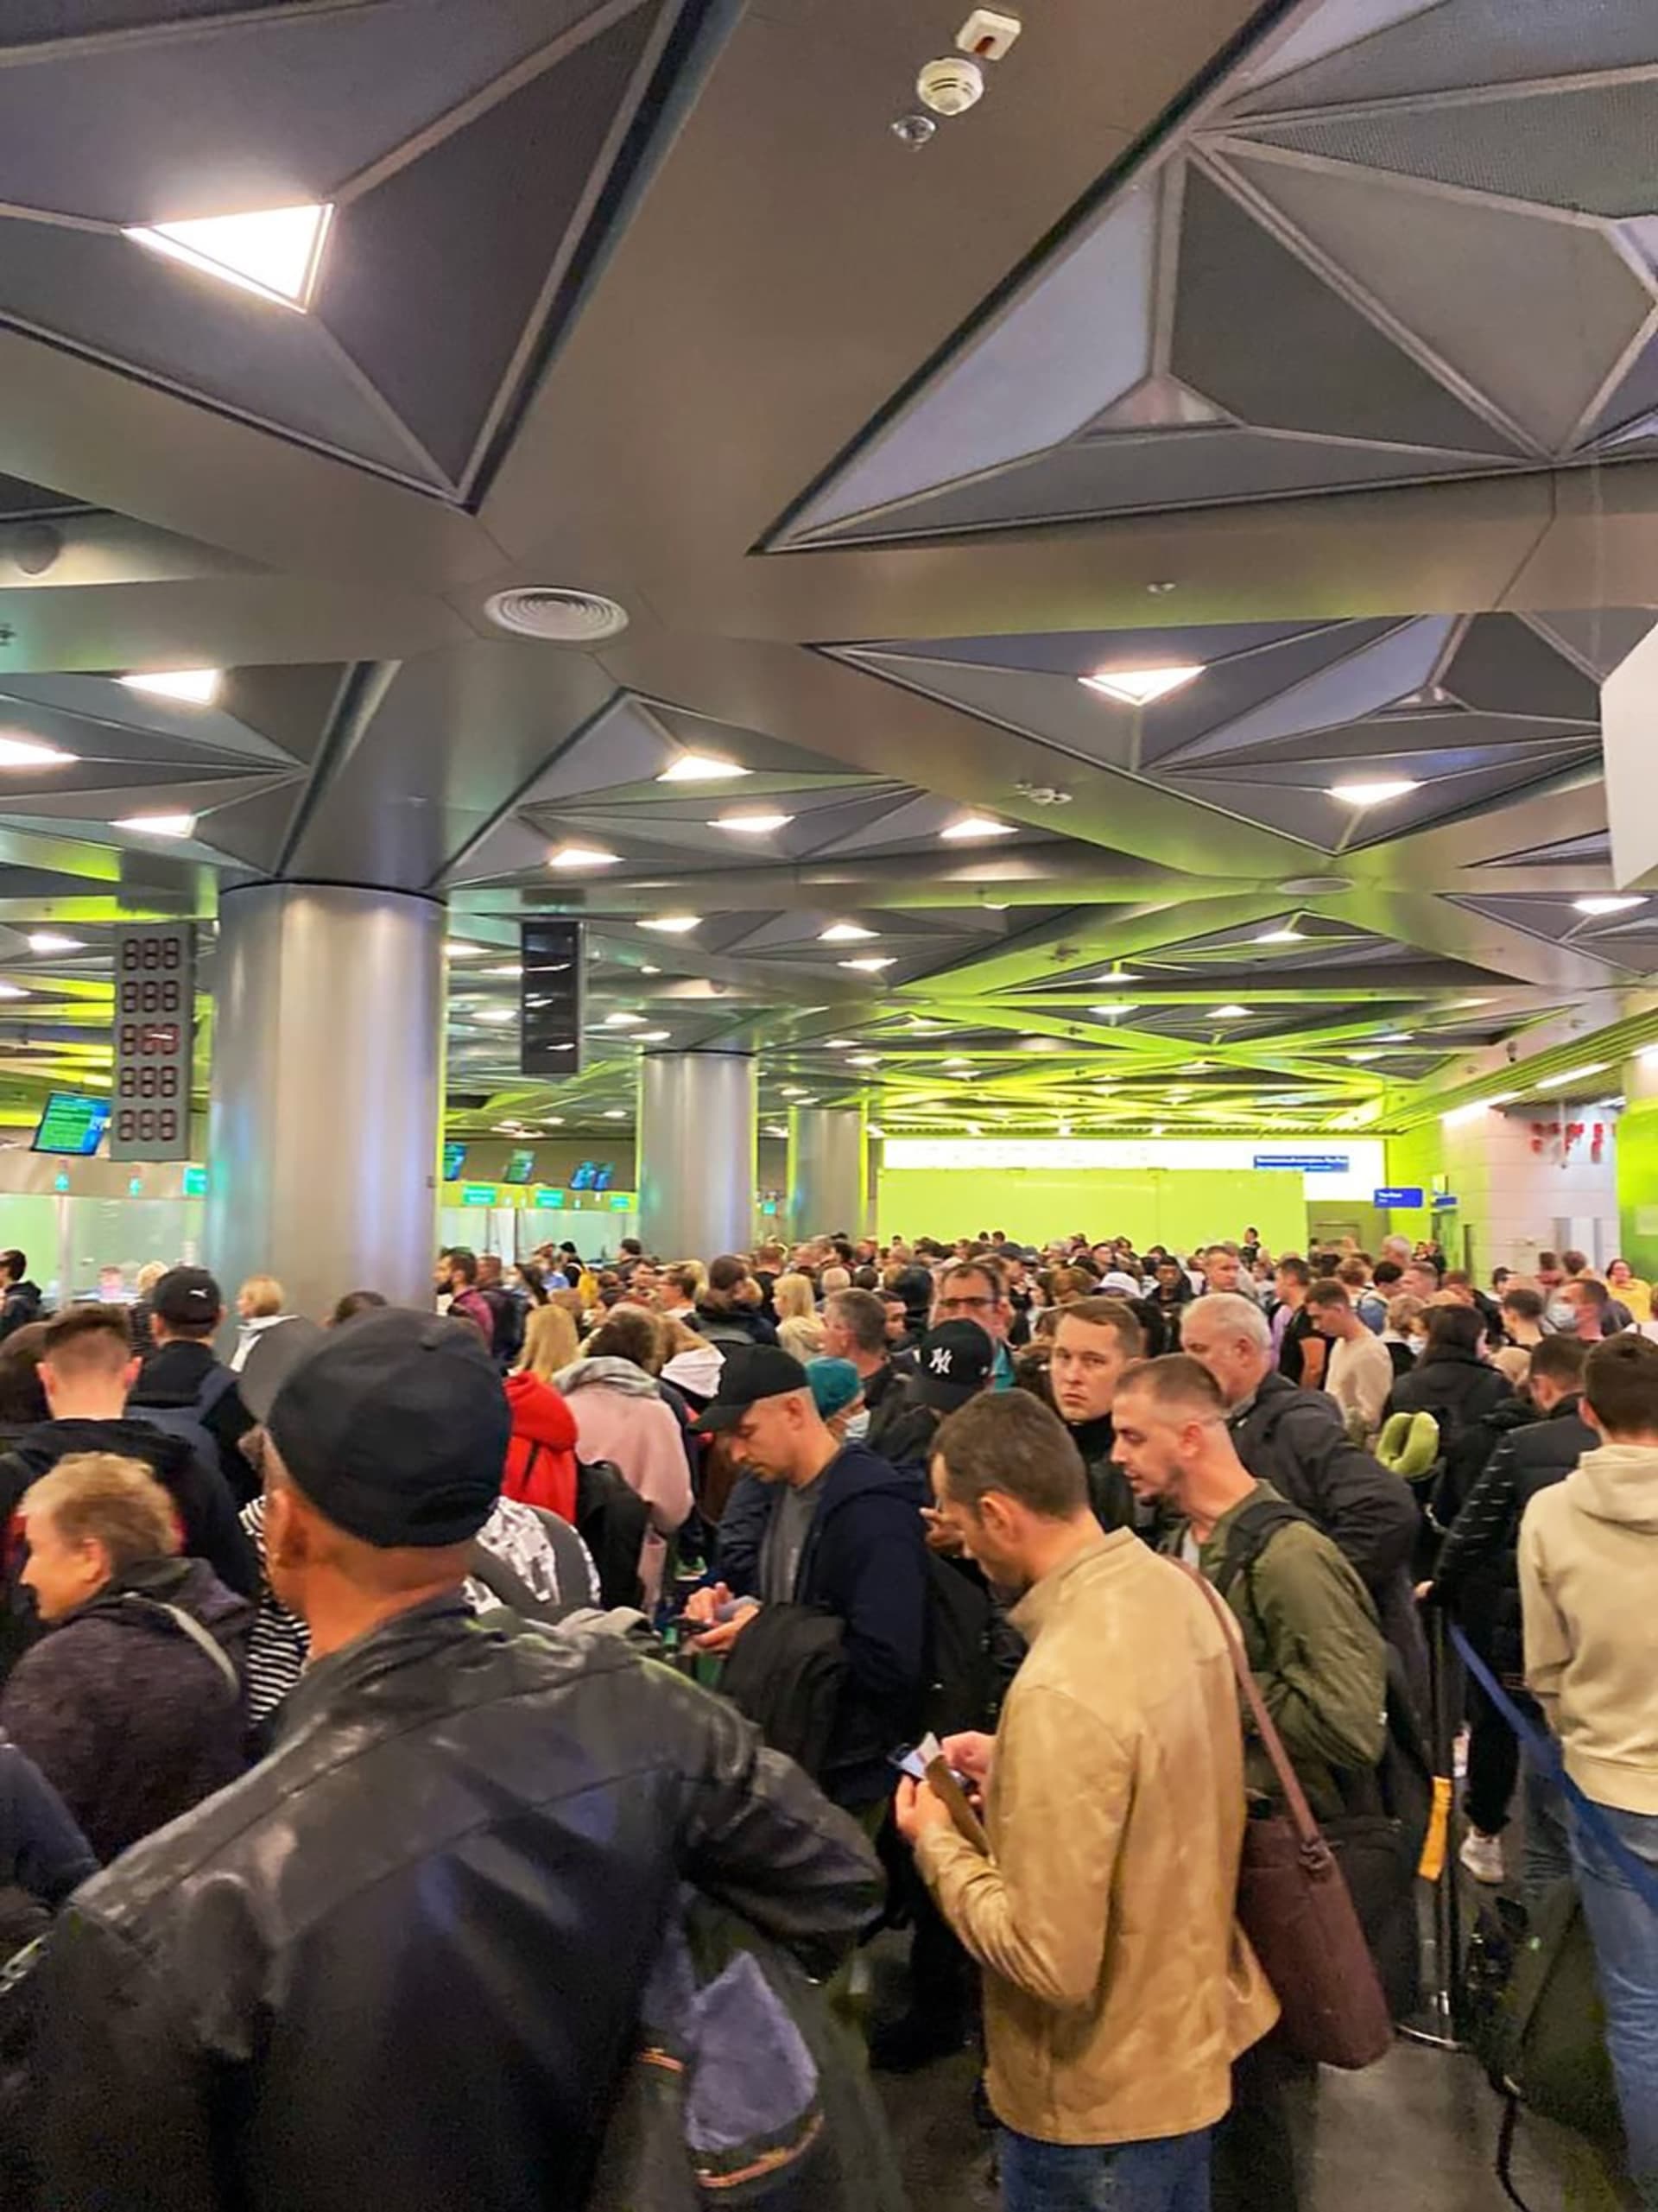 Rusové prchají z domoviny, zaplnili moskevská letiště. Mnoho z nich vyrazilo na Letiště Moskva-Vnukovo